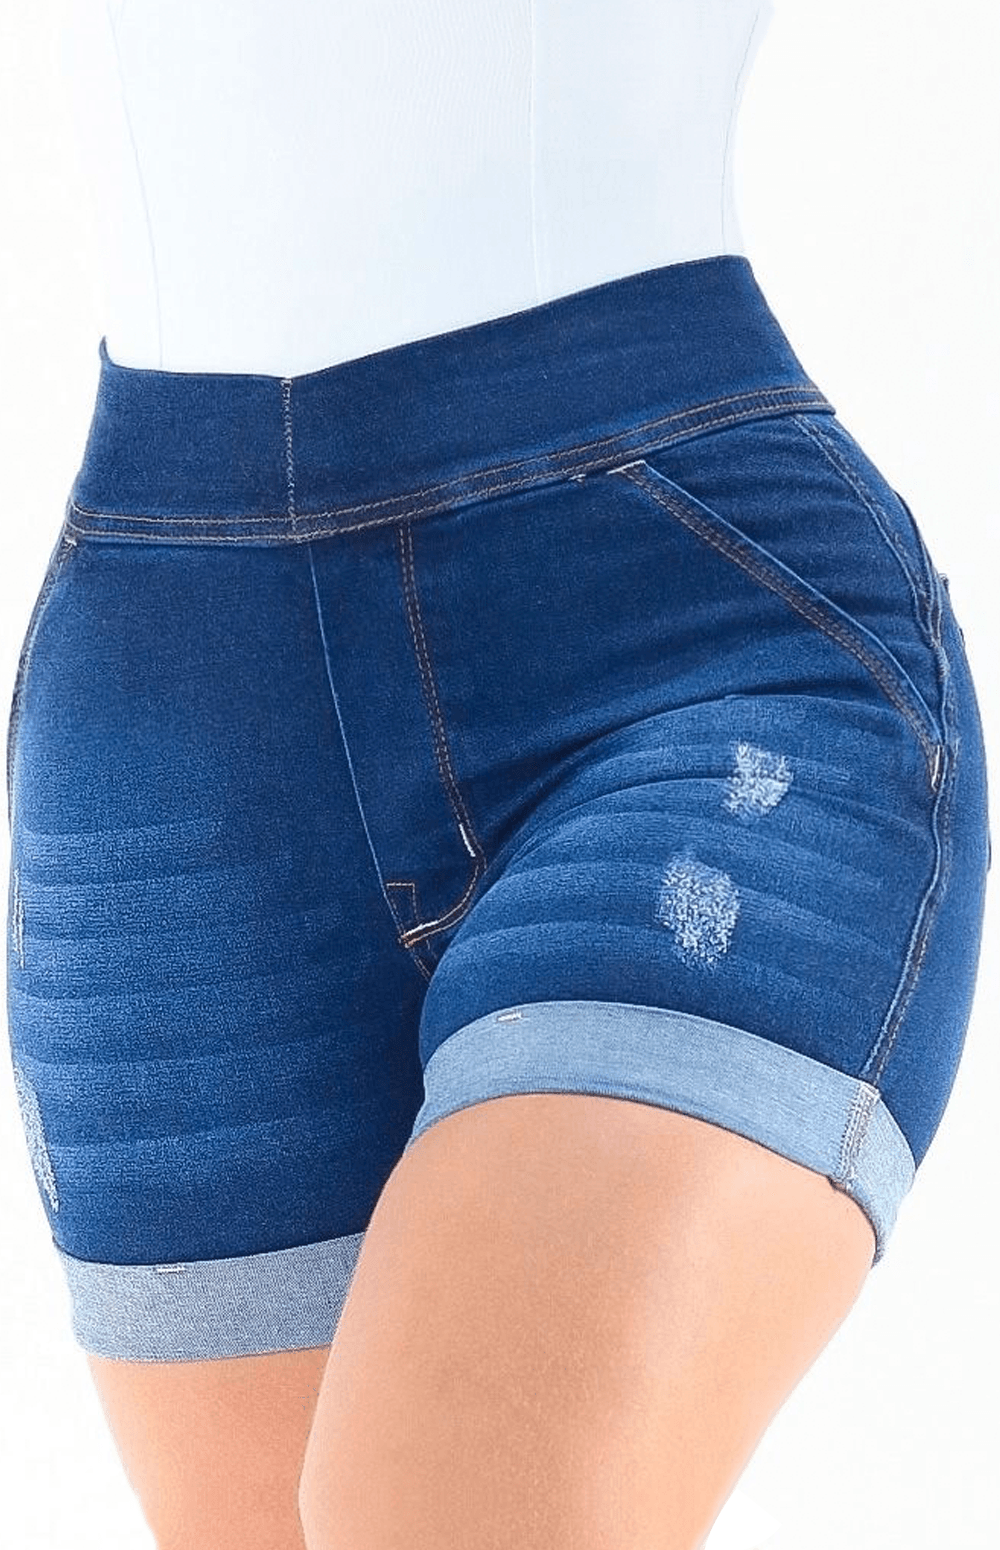 Calça Jeans Plus Size - Extreme Power Comfy Clássica